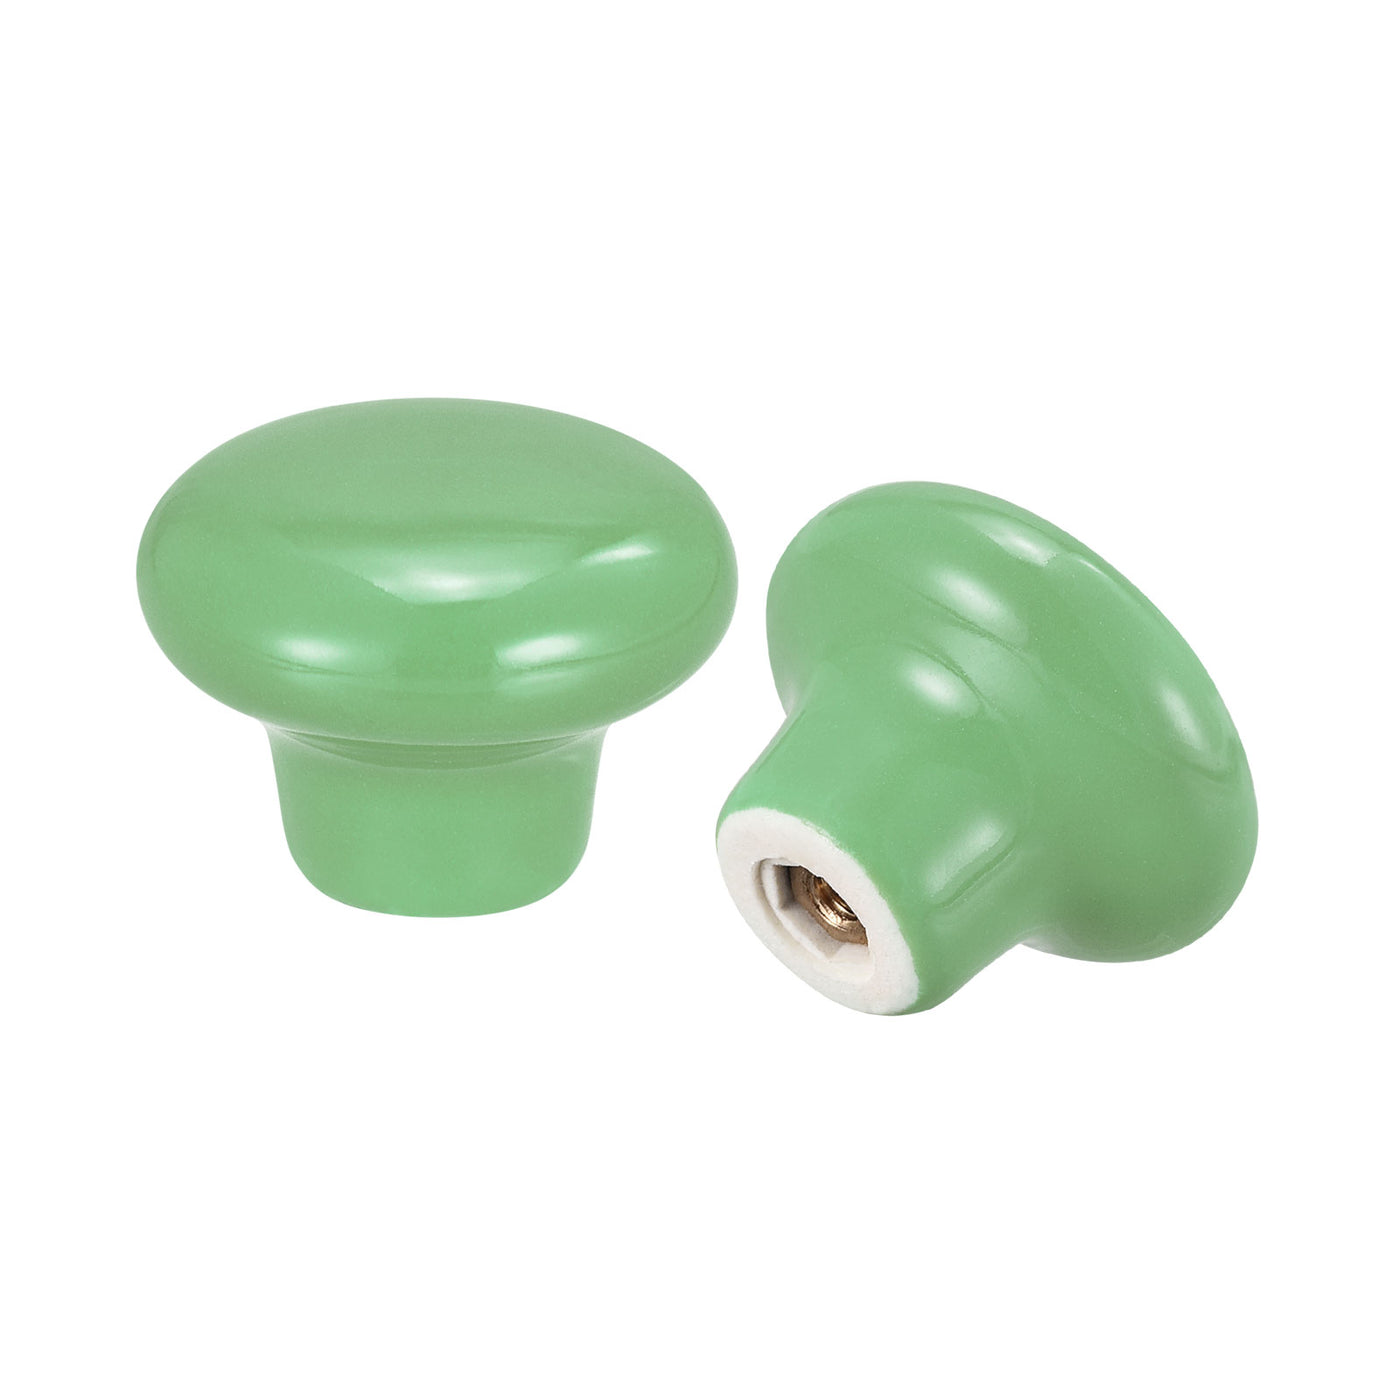 uxcell Uxcell 32x24mm Ceramic Drawer Knobs, 10pcs Mushroom Shape Door Pull Handles Green